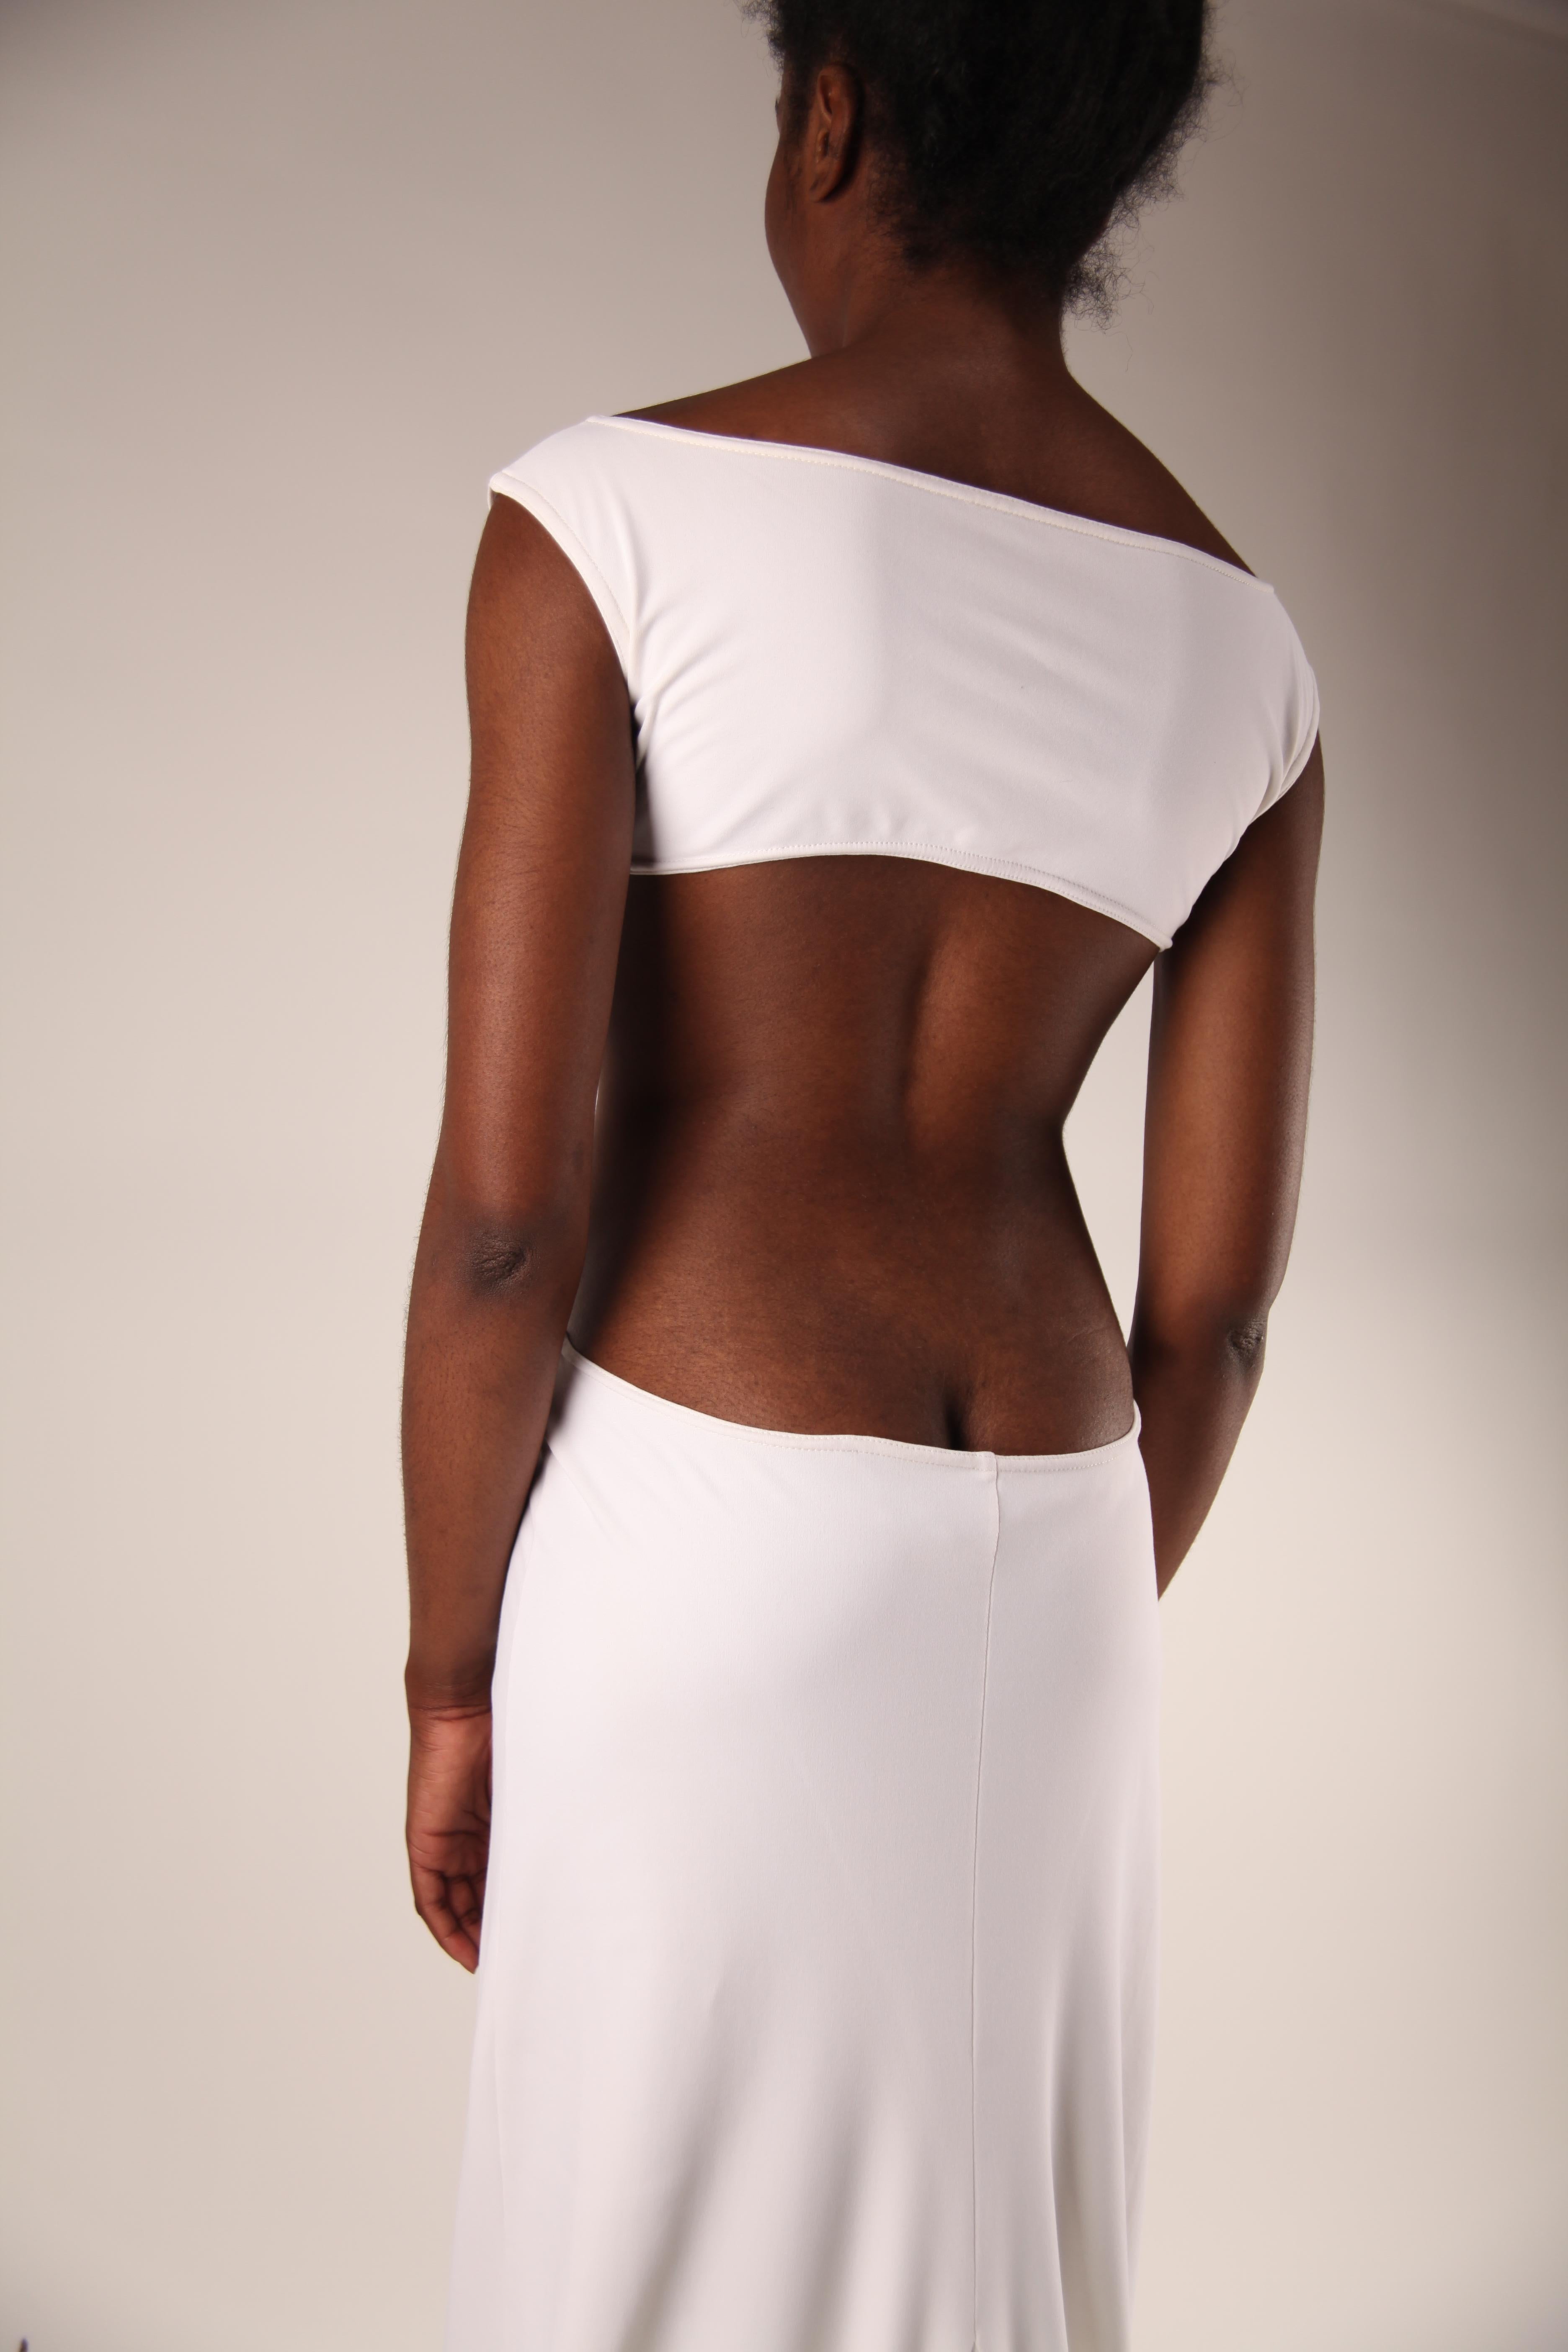 Chantal Thomass, catwalk gown “African Summer” collection, Summer 92/93 5